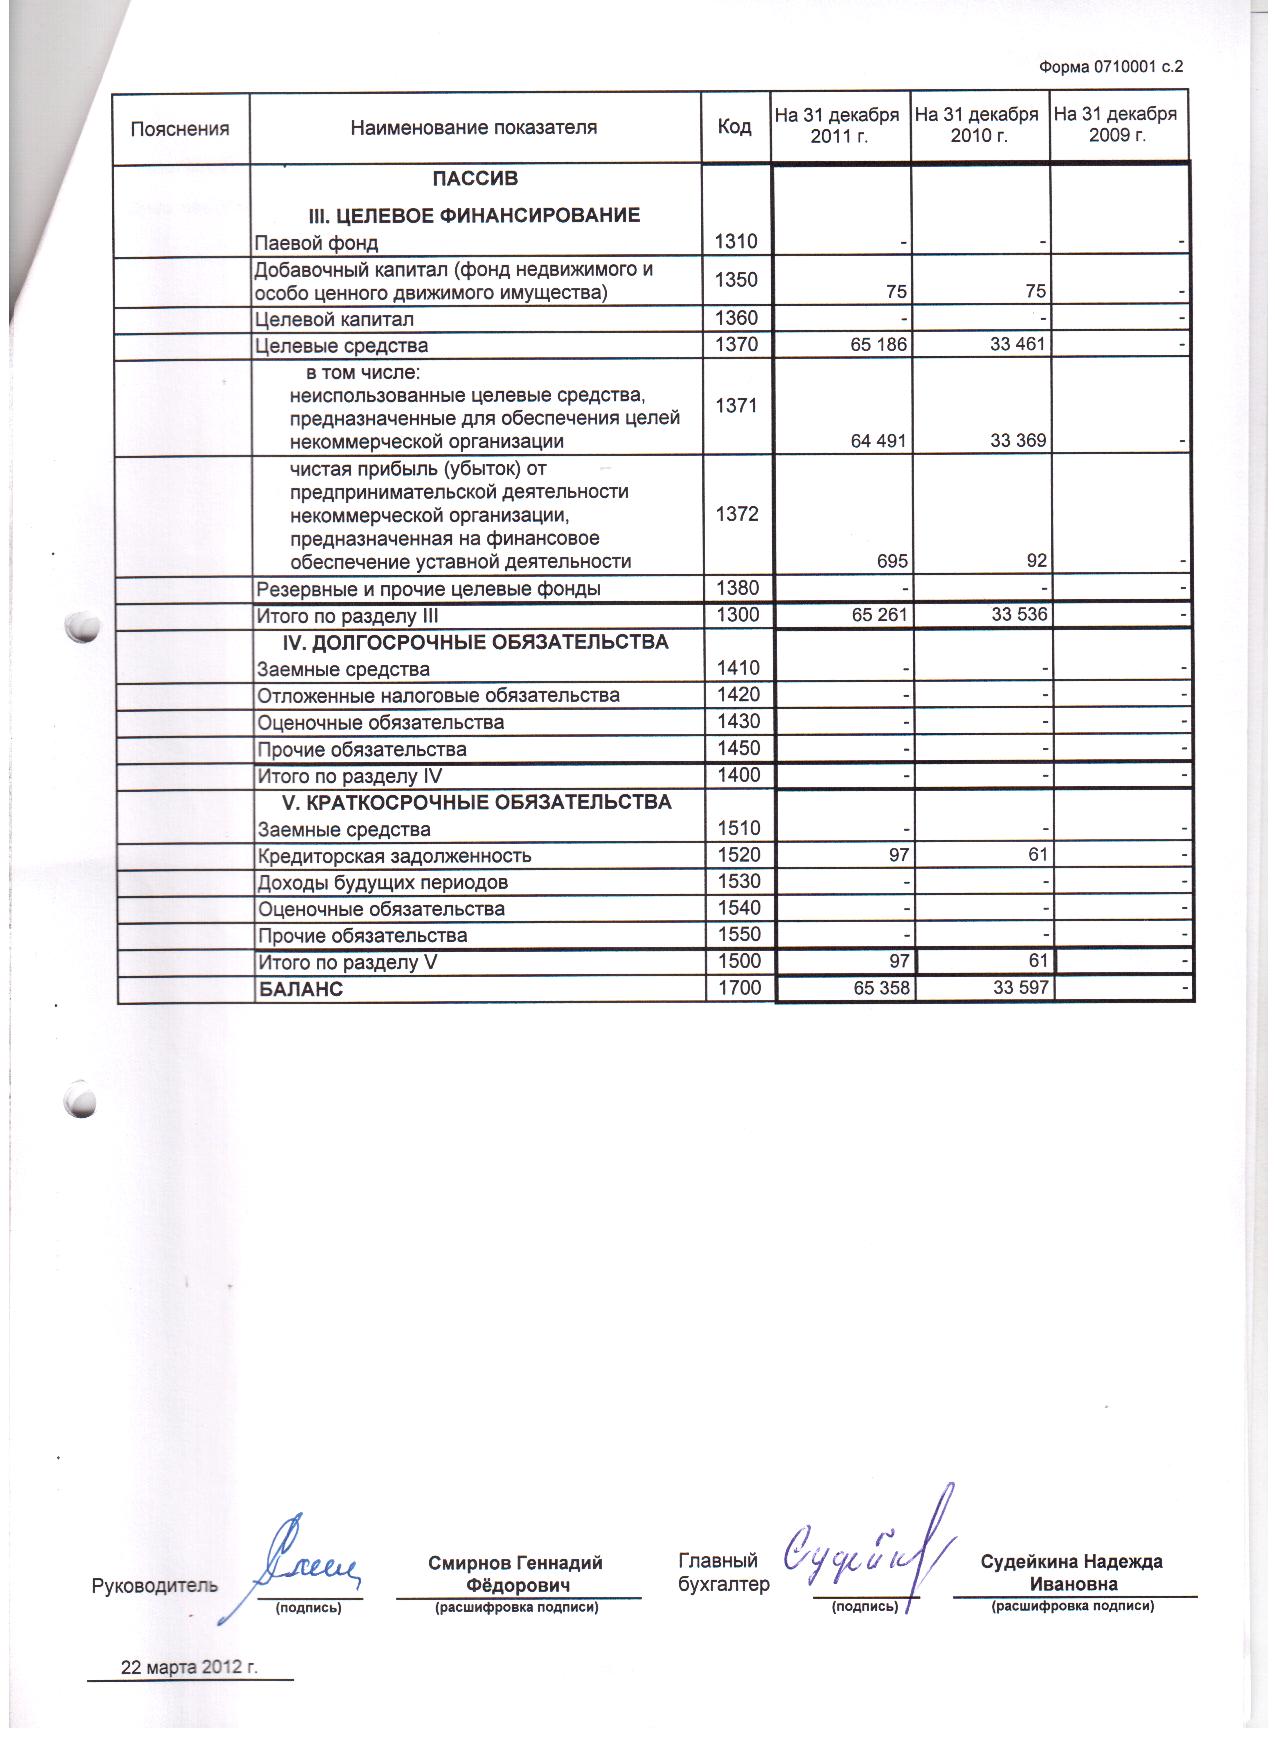 Бухгалтерская отчетность за 2011 г. (лист 2)